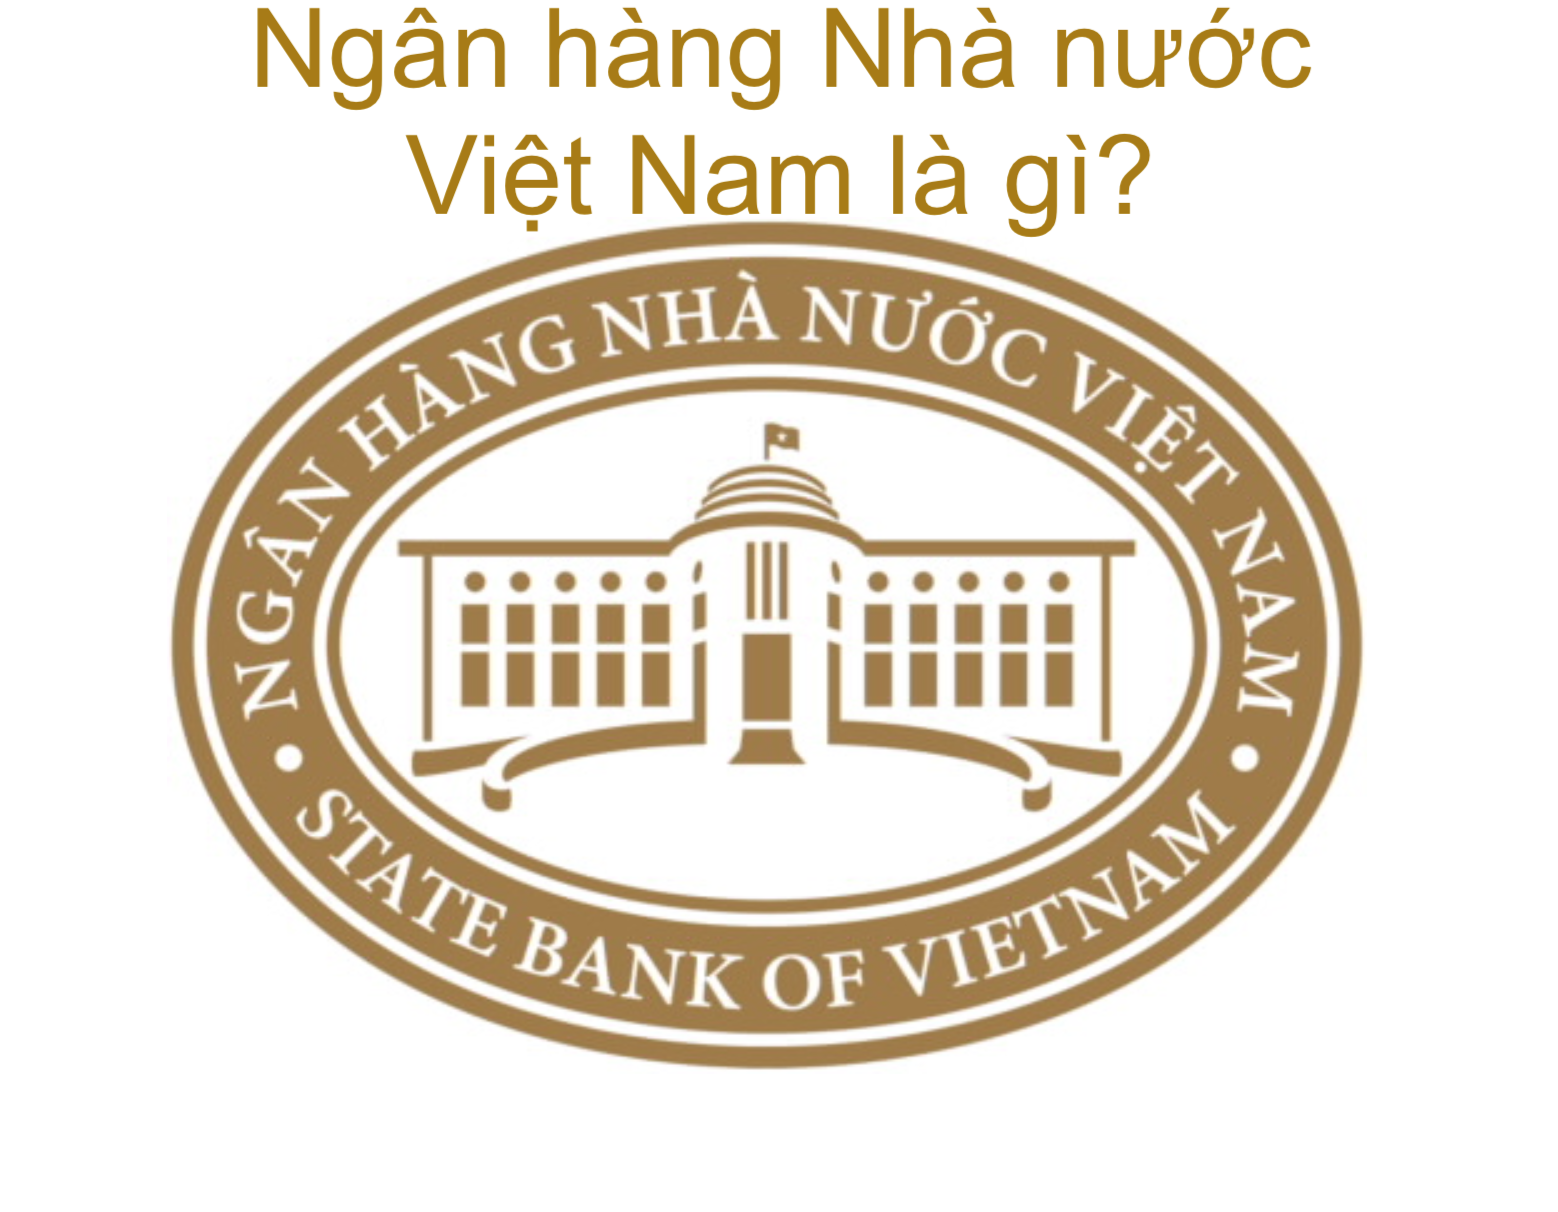 ngan-hang-nha-nuoc-viet-nam